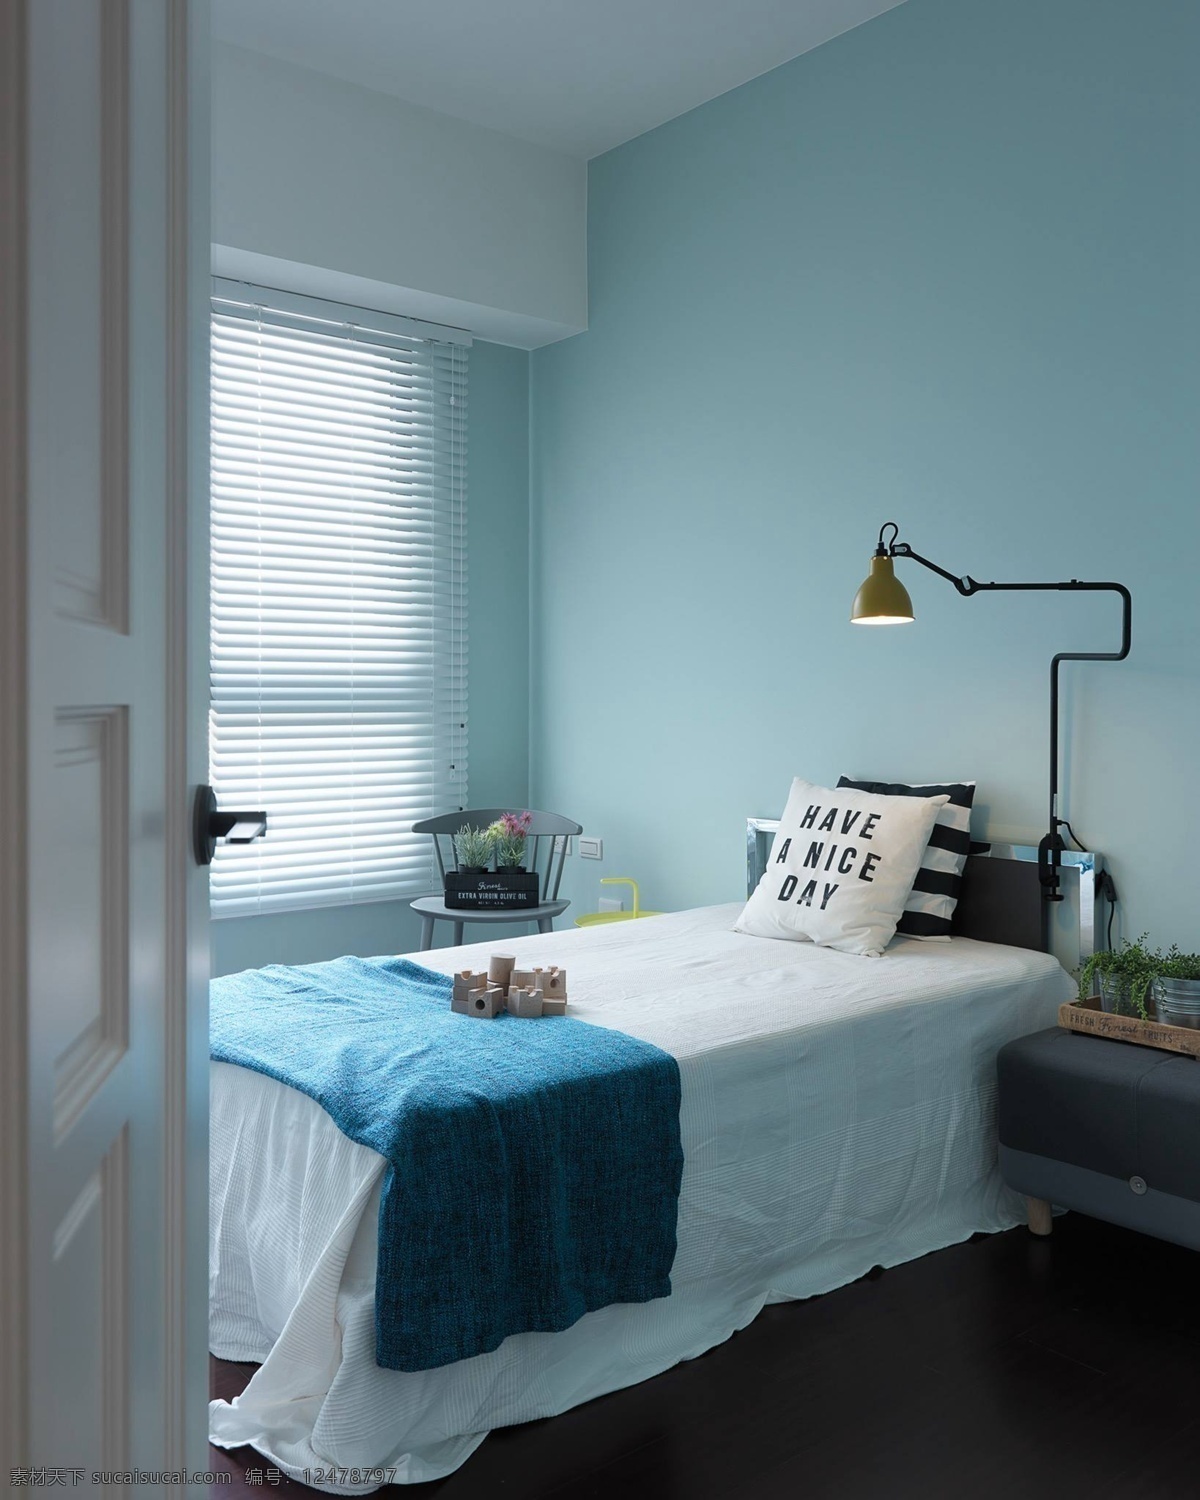 现代 清新 卧室 浅蓝色 背景 墙 室内装修 效果图 白色床品 卧室装修 木制床头柜 百叶窗